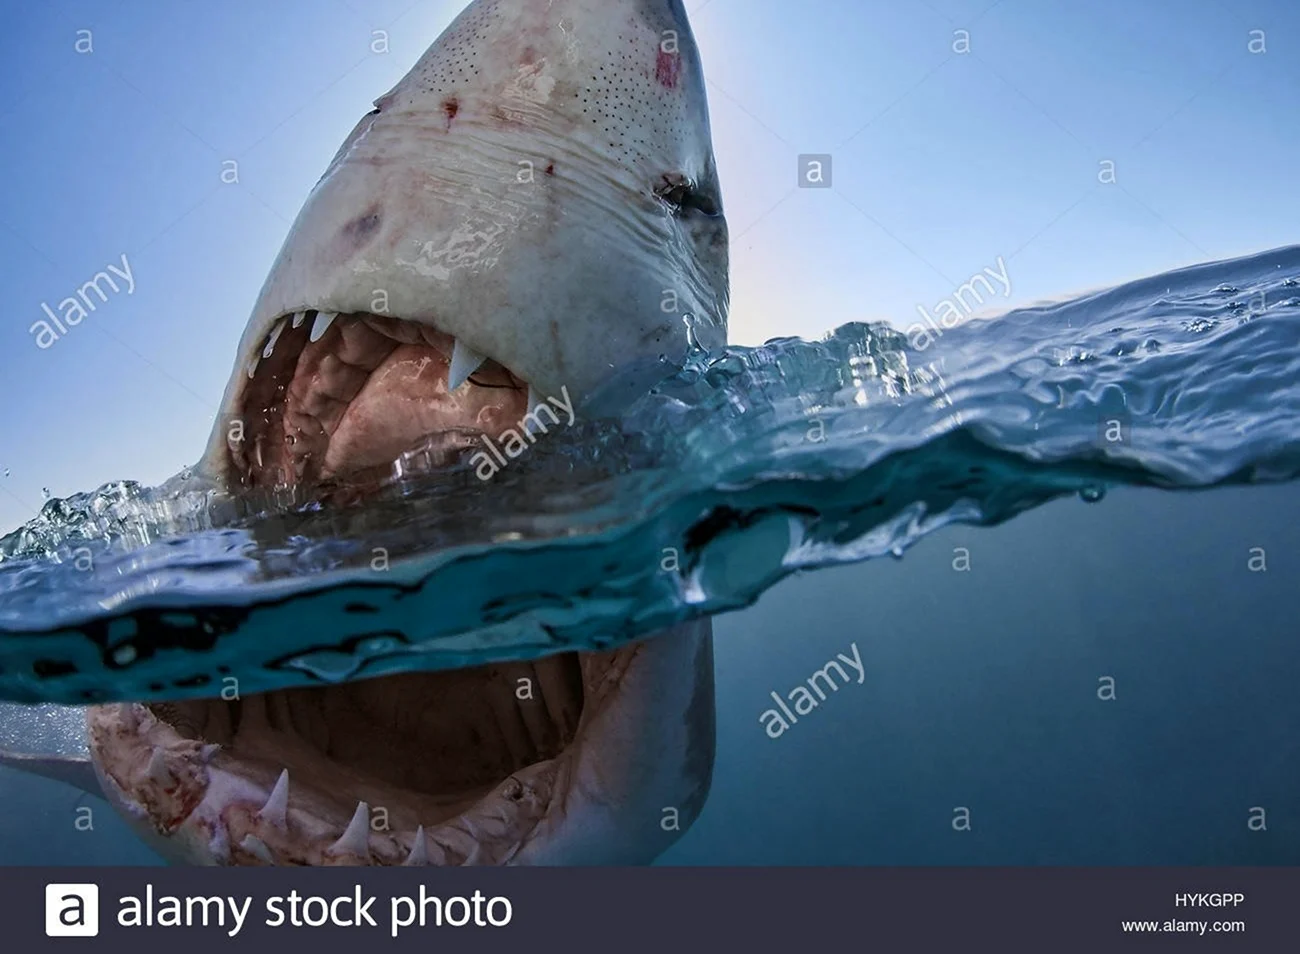 Картинки самых страшных акул. Картинка